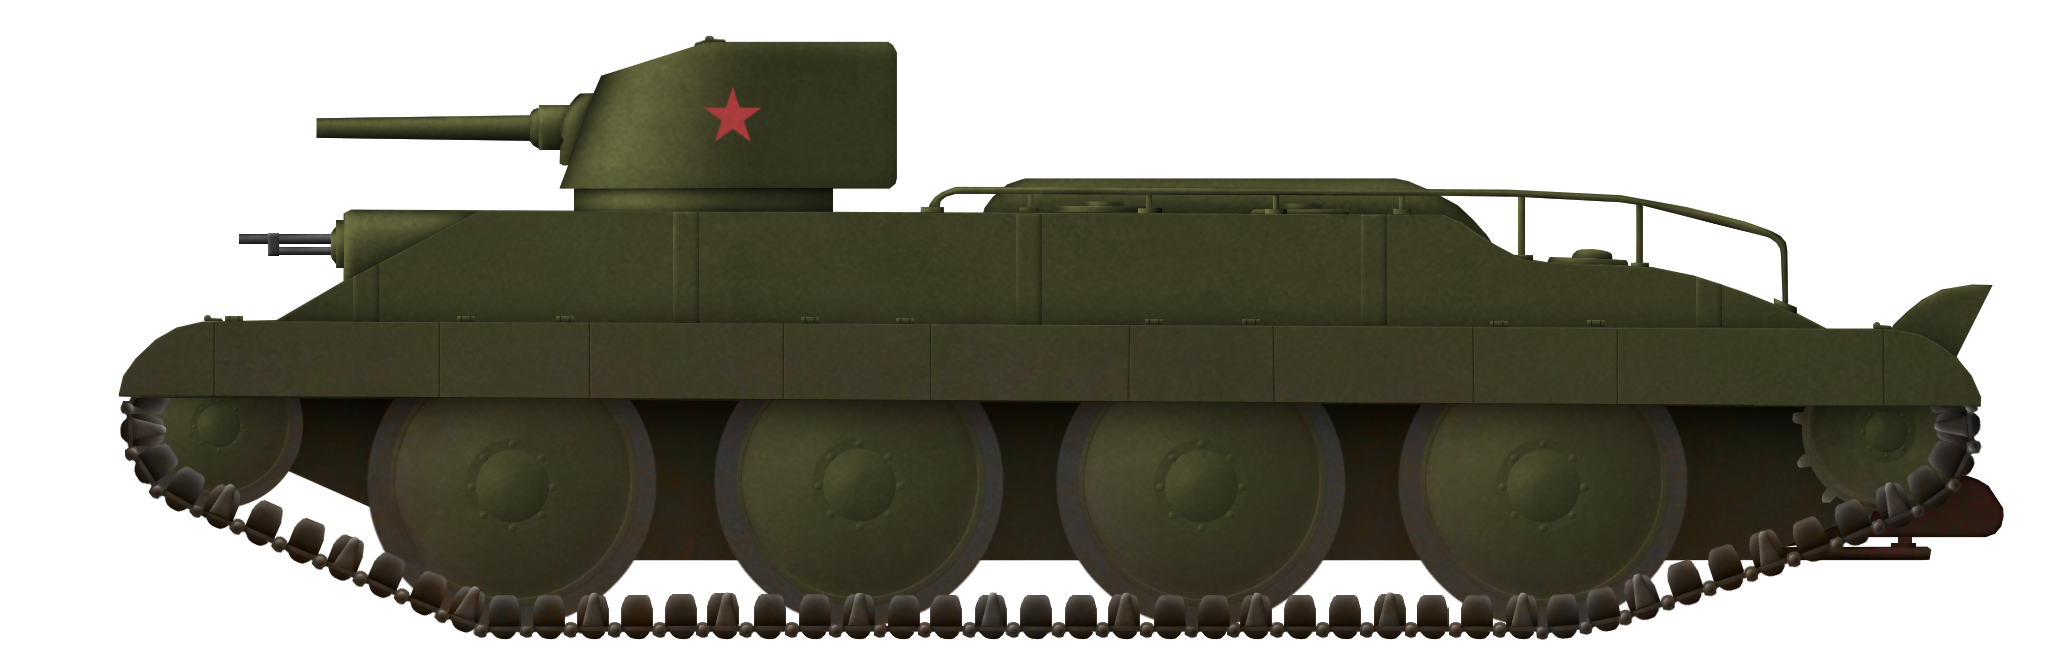 WW2 Soviet Prototypes Archives - Tank Encyclopedia